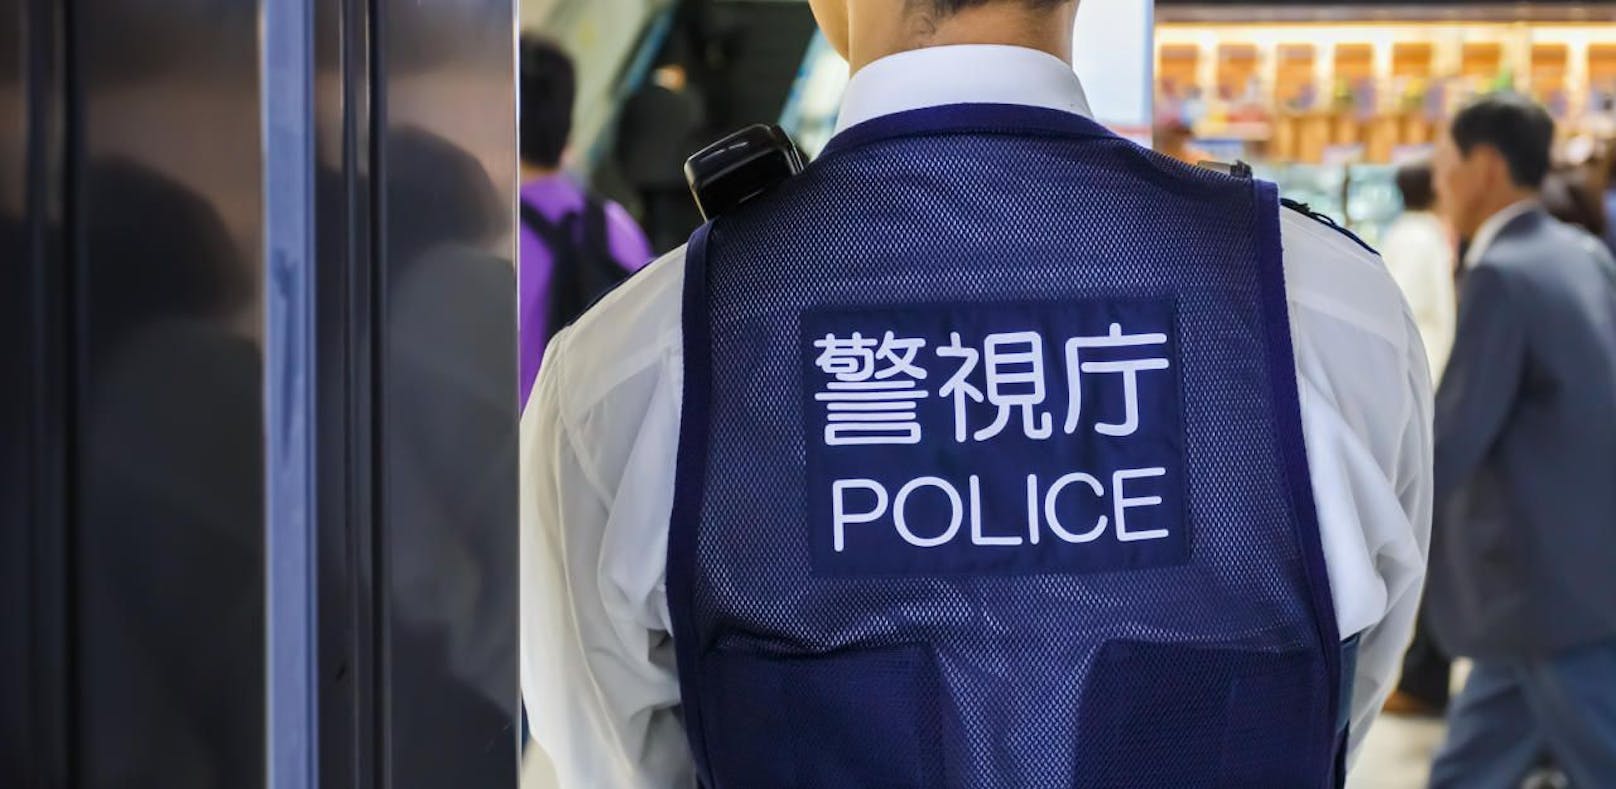 Japaner wollte Auto voller Undercover-Cops stehlen